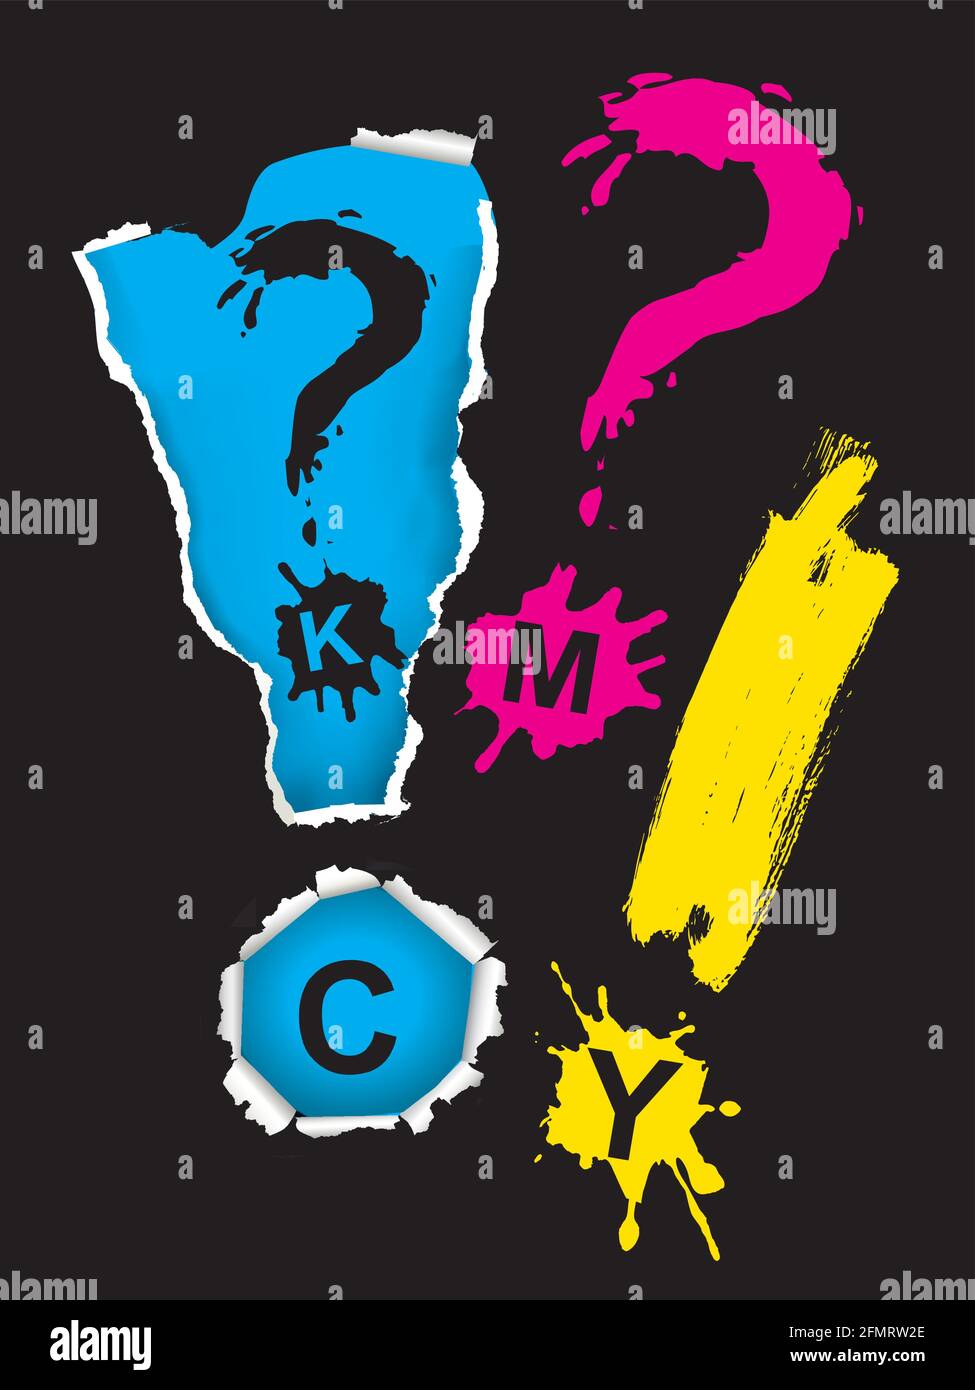 Stampa CMYK di colori, simboli, spruzzi. Illustrazione dei segni di esclamazione espressiva e di acquisizione con caratteri CMYK. Vettore disponibile. Illustrazione Vettoriale